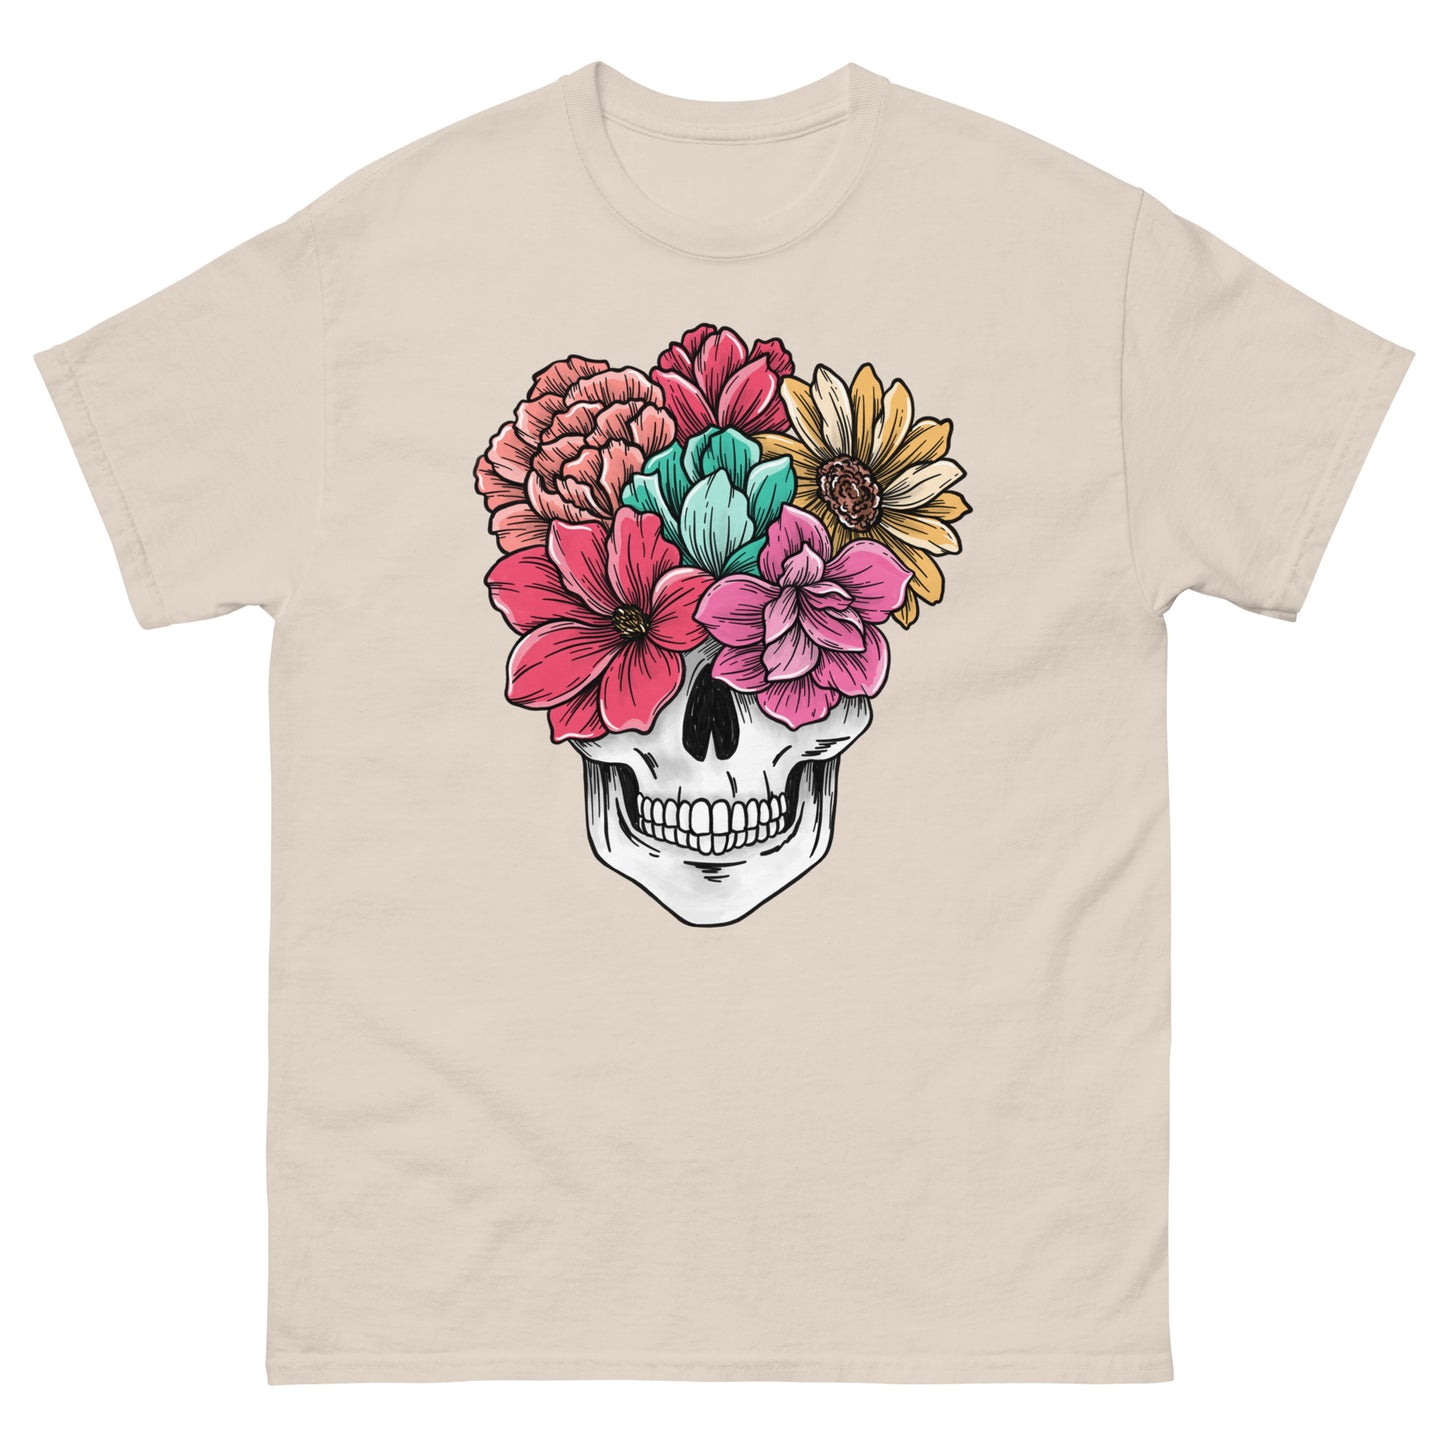 Flowering skull - Men's classic tee